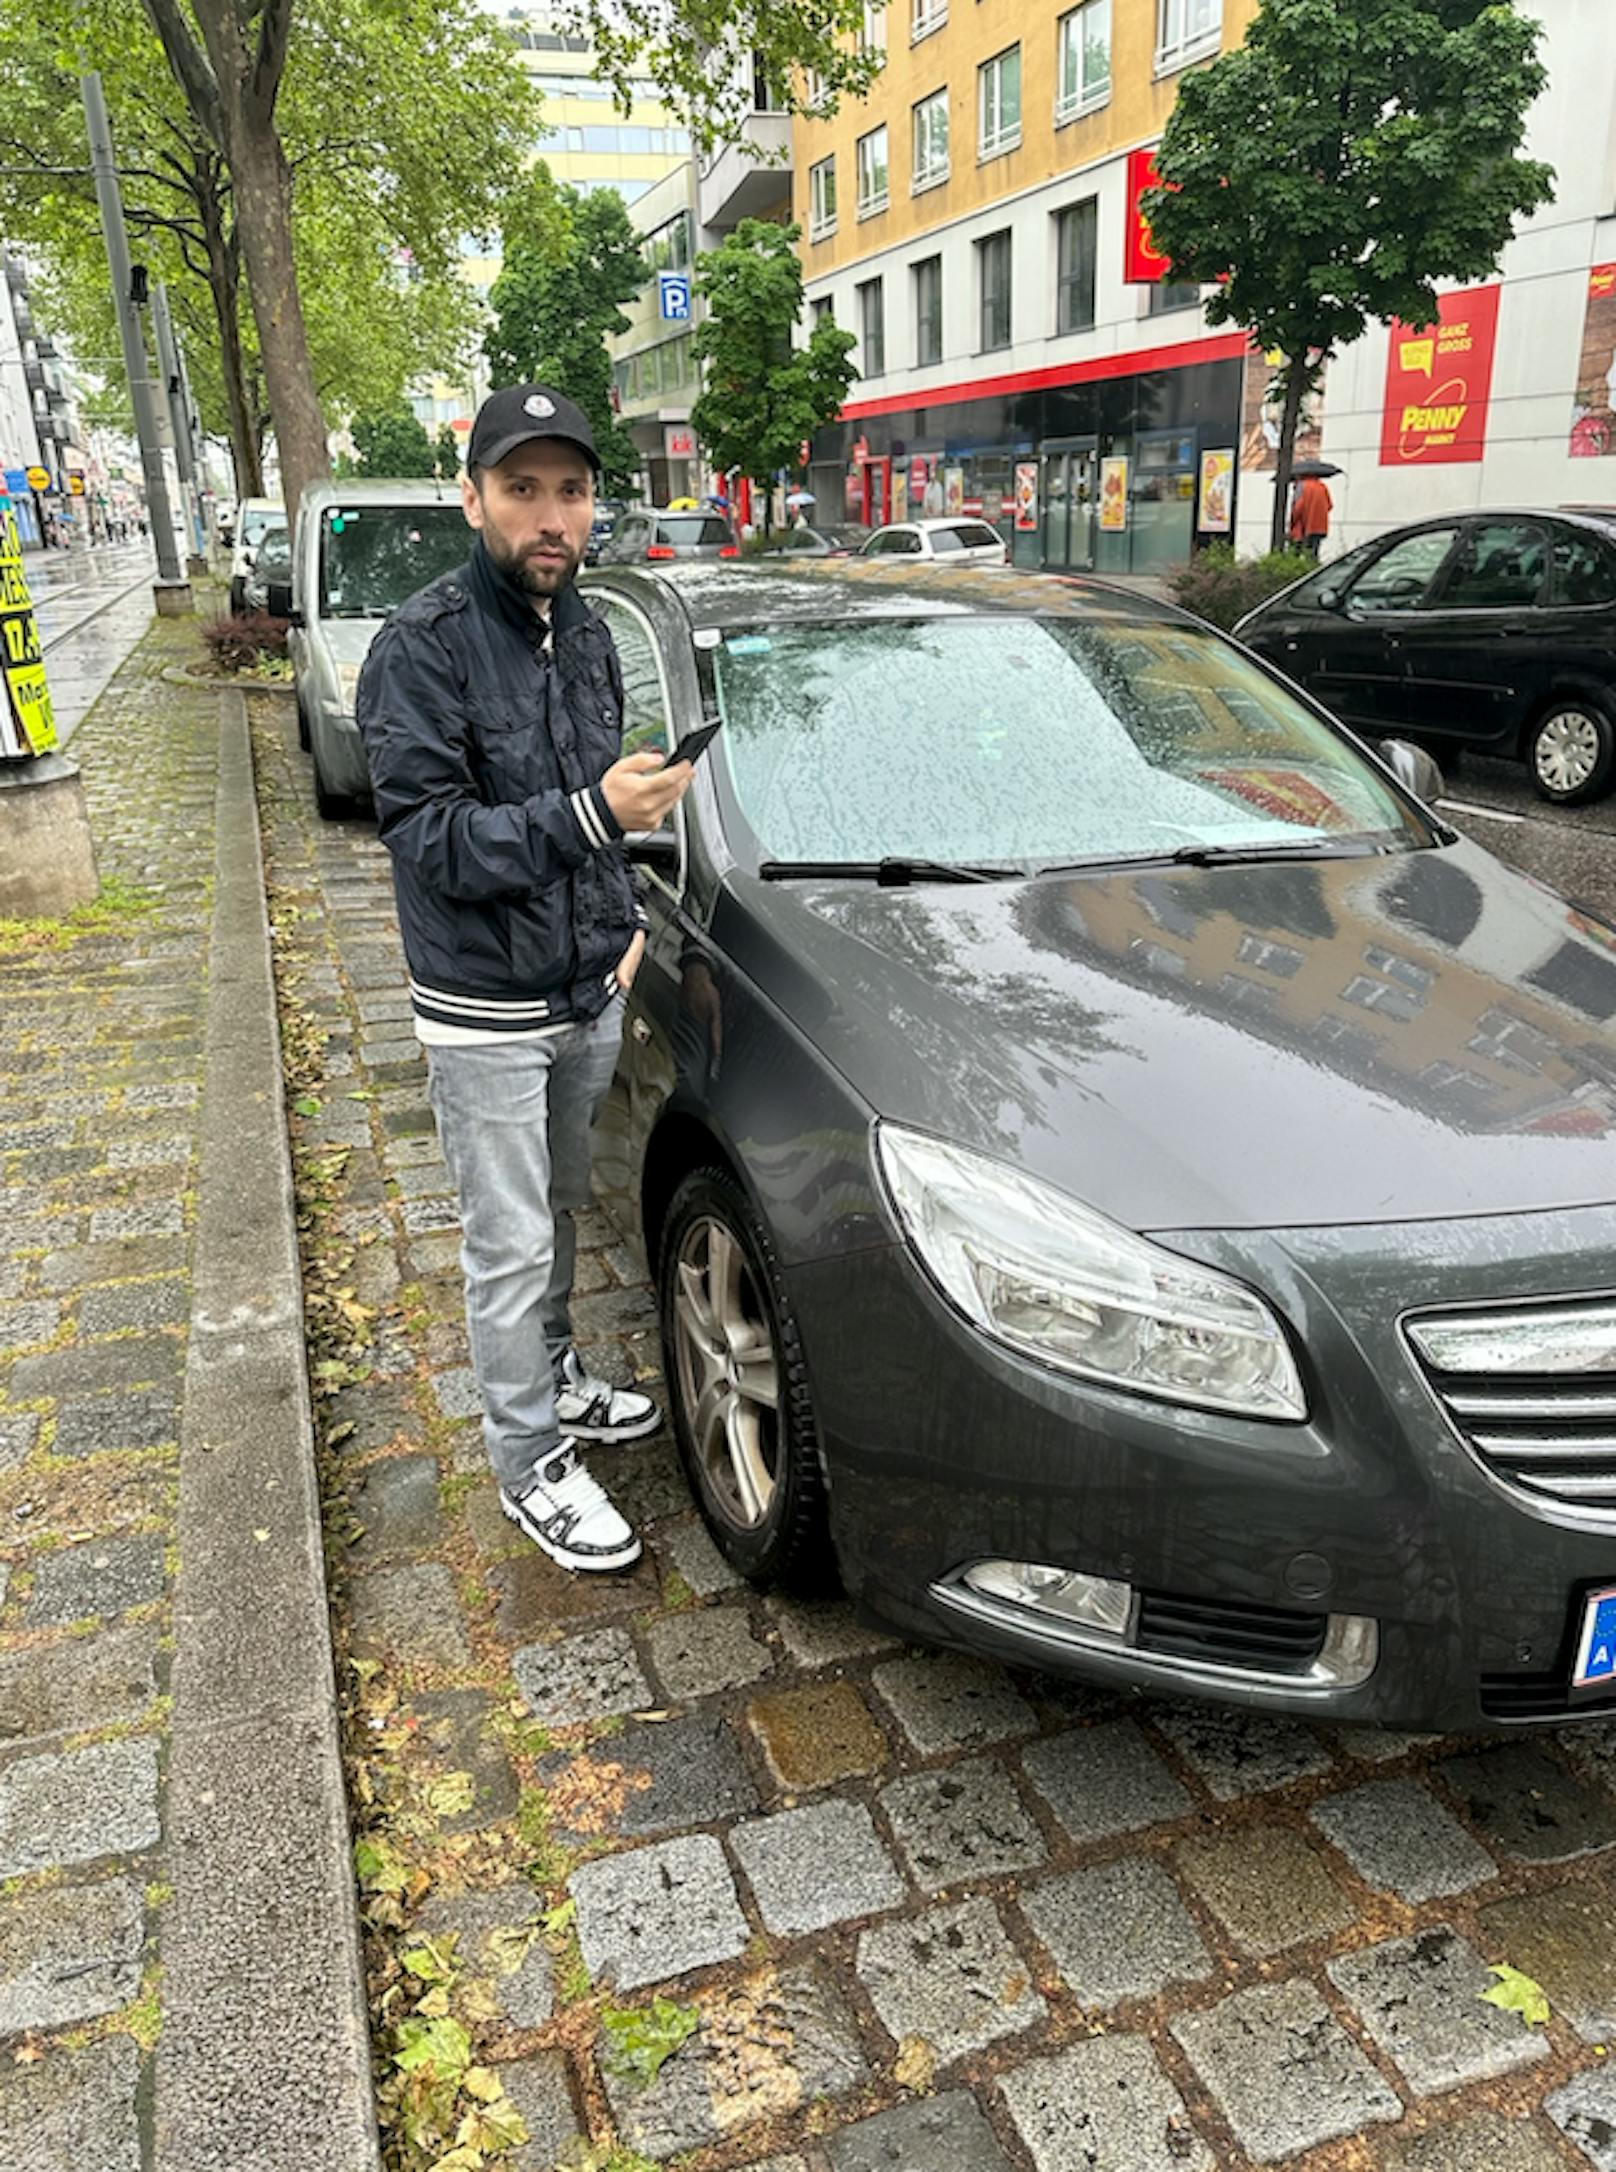 Trotz Parkschein soll Wiener 36 Euro Strafe zahlen